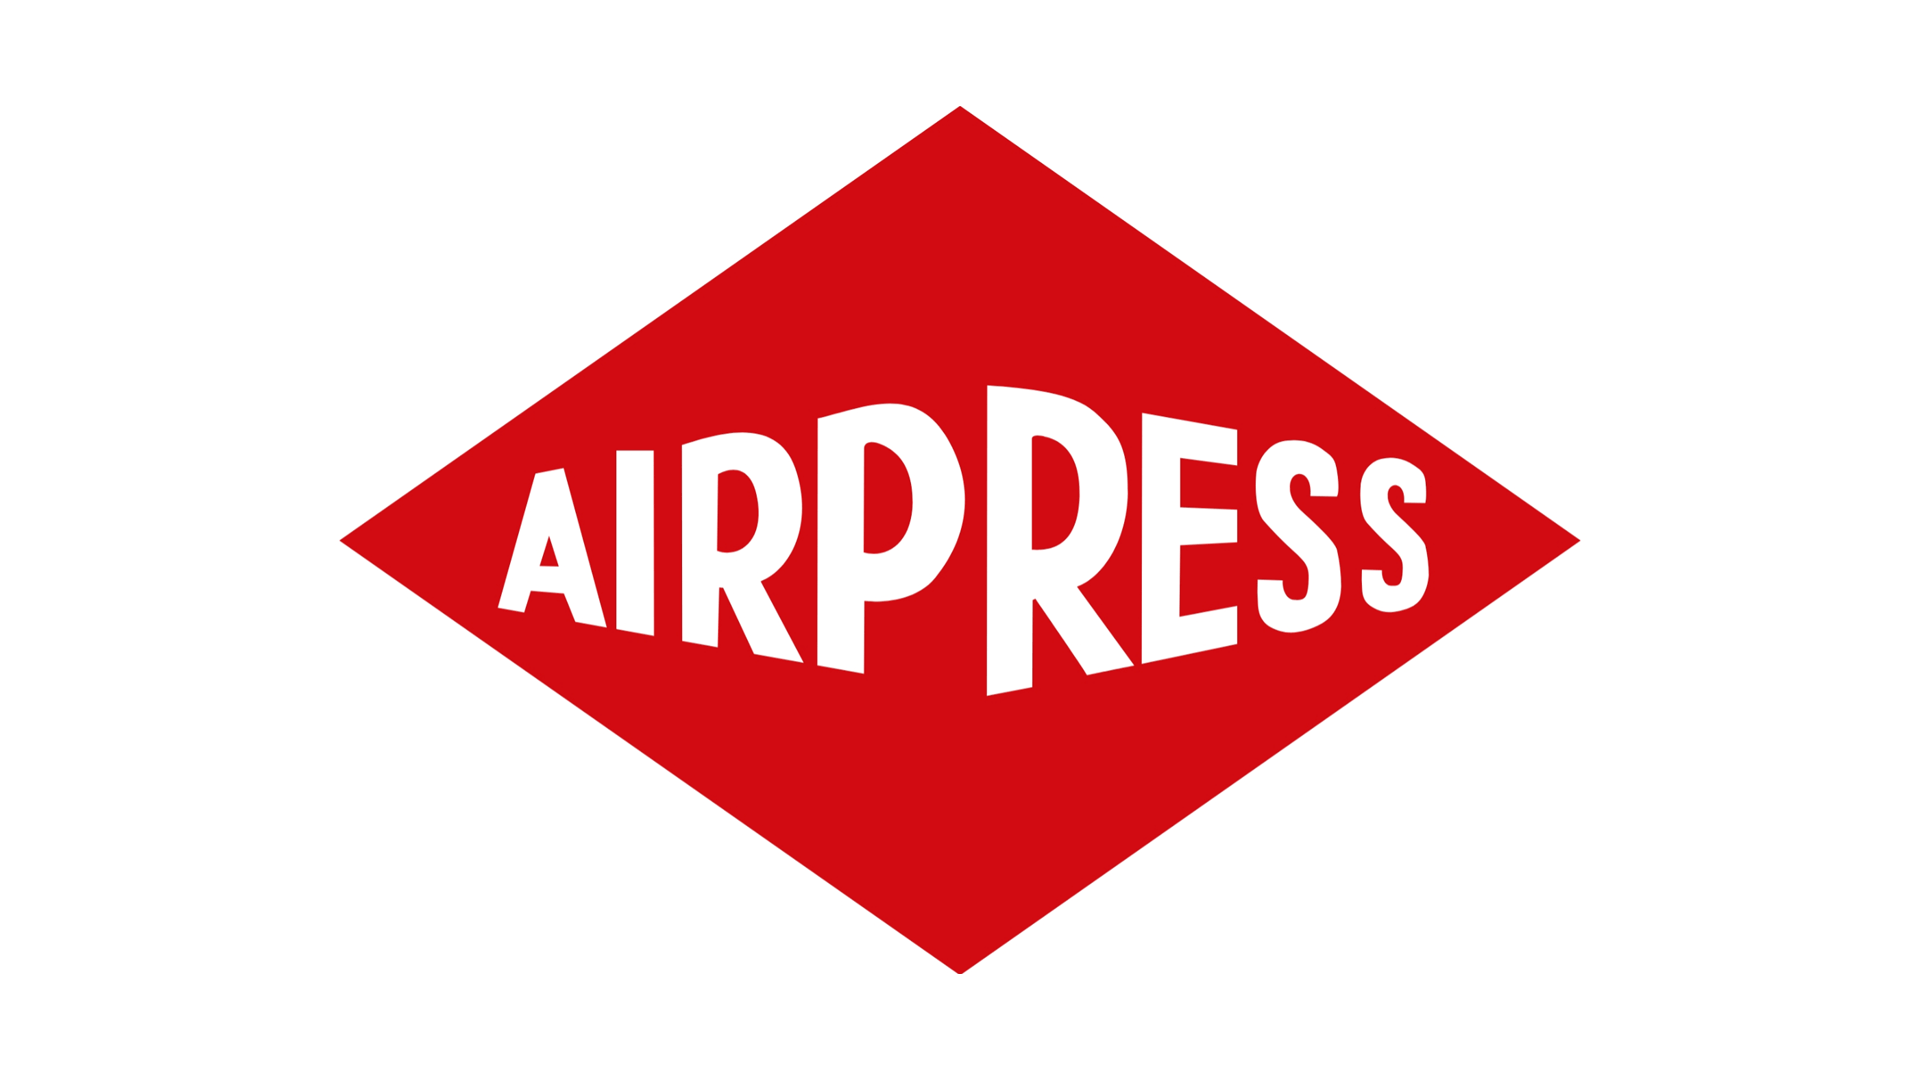 Airpress - La marca más conocida de aire comprimido